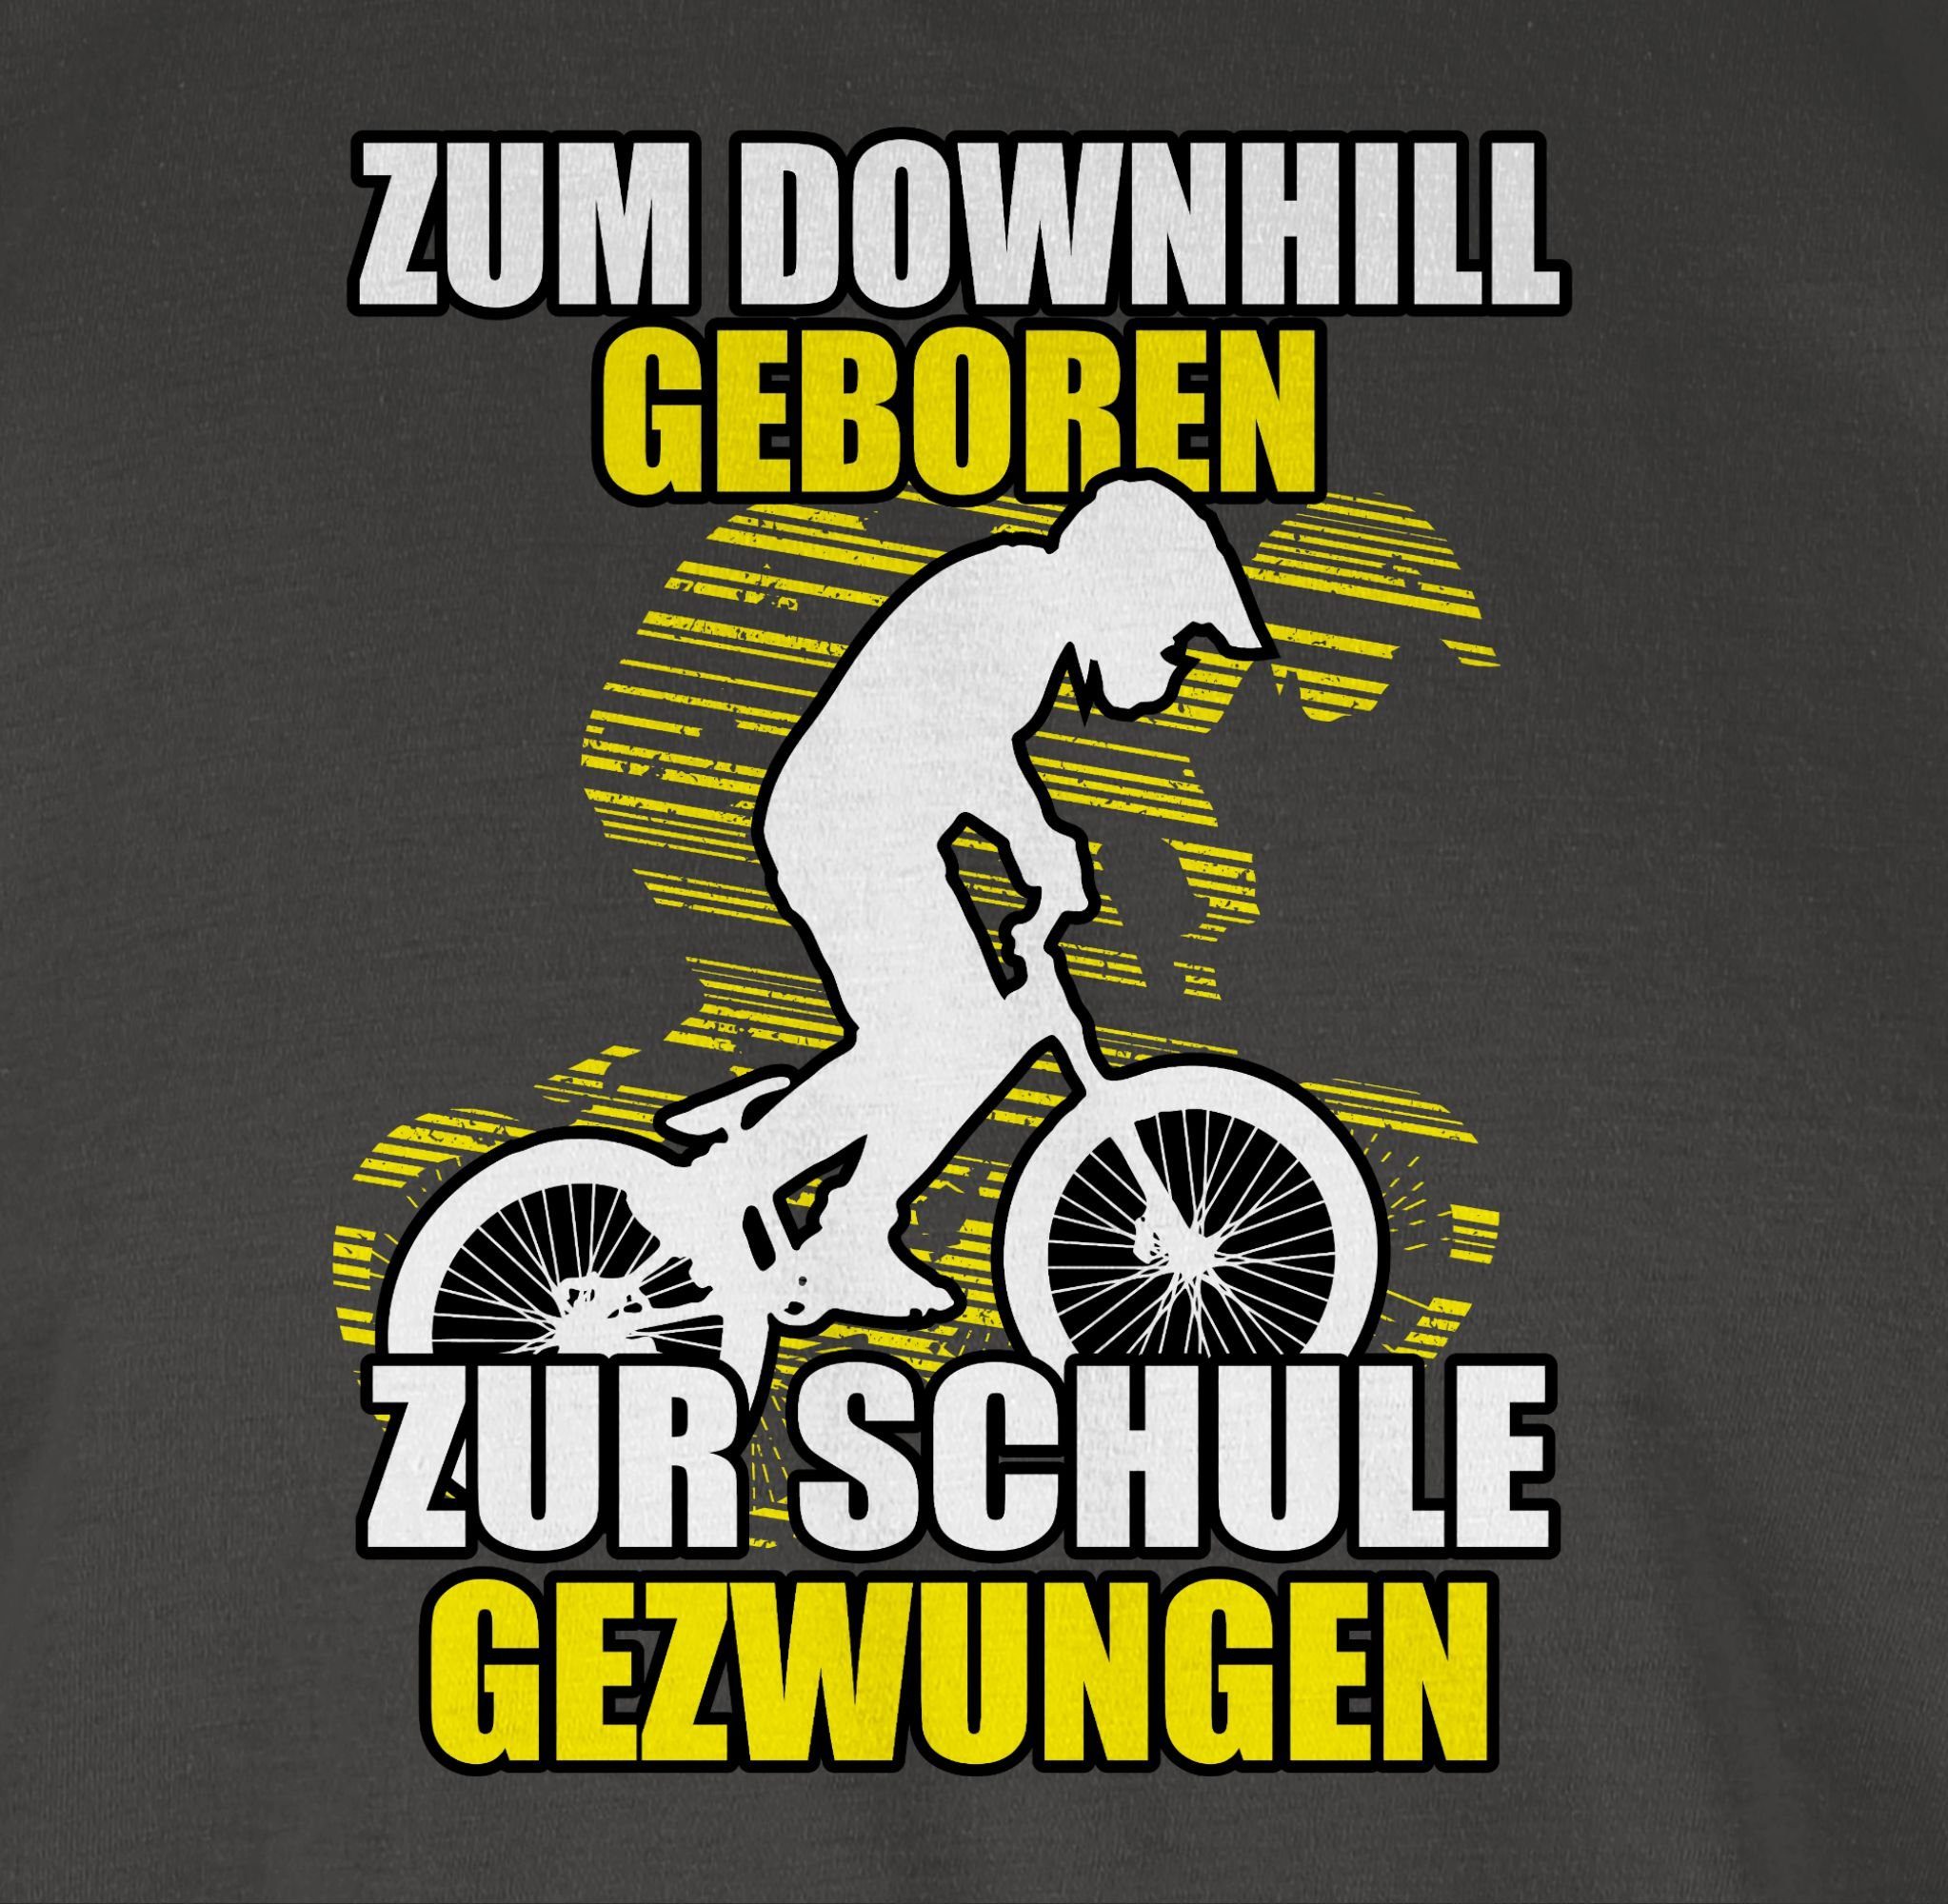 Schule gezwungen Radsport Downhill Shirtracer Fahrrad geboren 01 Bekleidung Zum Dunkelgrau zur T-Shirt